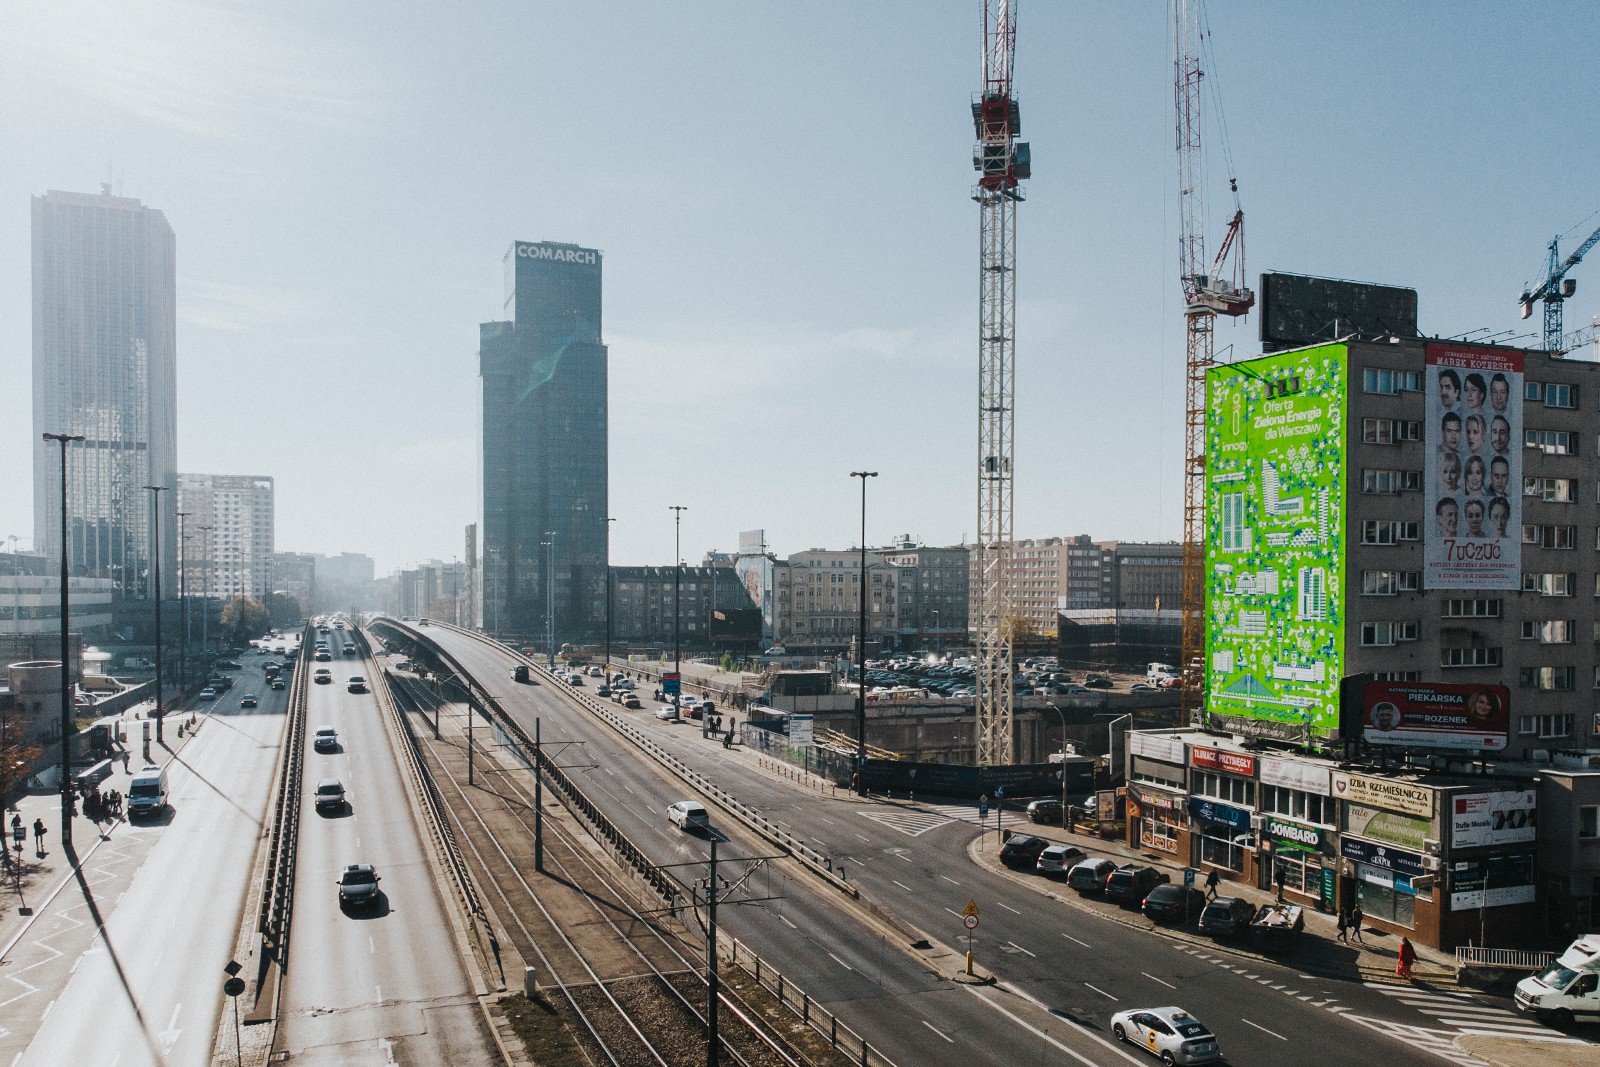 Mural reklamowy dla klienta innogy na ulicy Chmielnej w Warszawie | Zielona Energia dla Warszawy | Portfolio